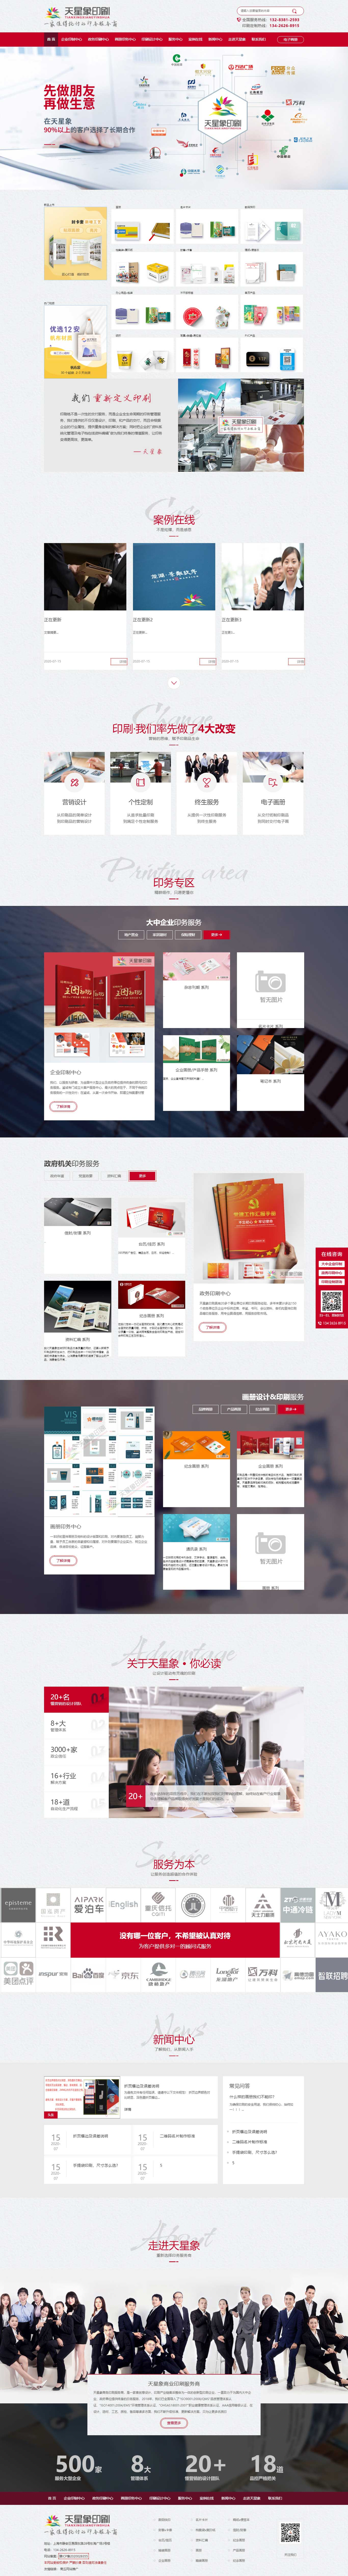 郑州网站建设修改功能特效模块天星象商务印刷画册印刷厂家(图1)